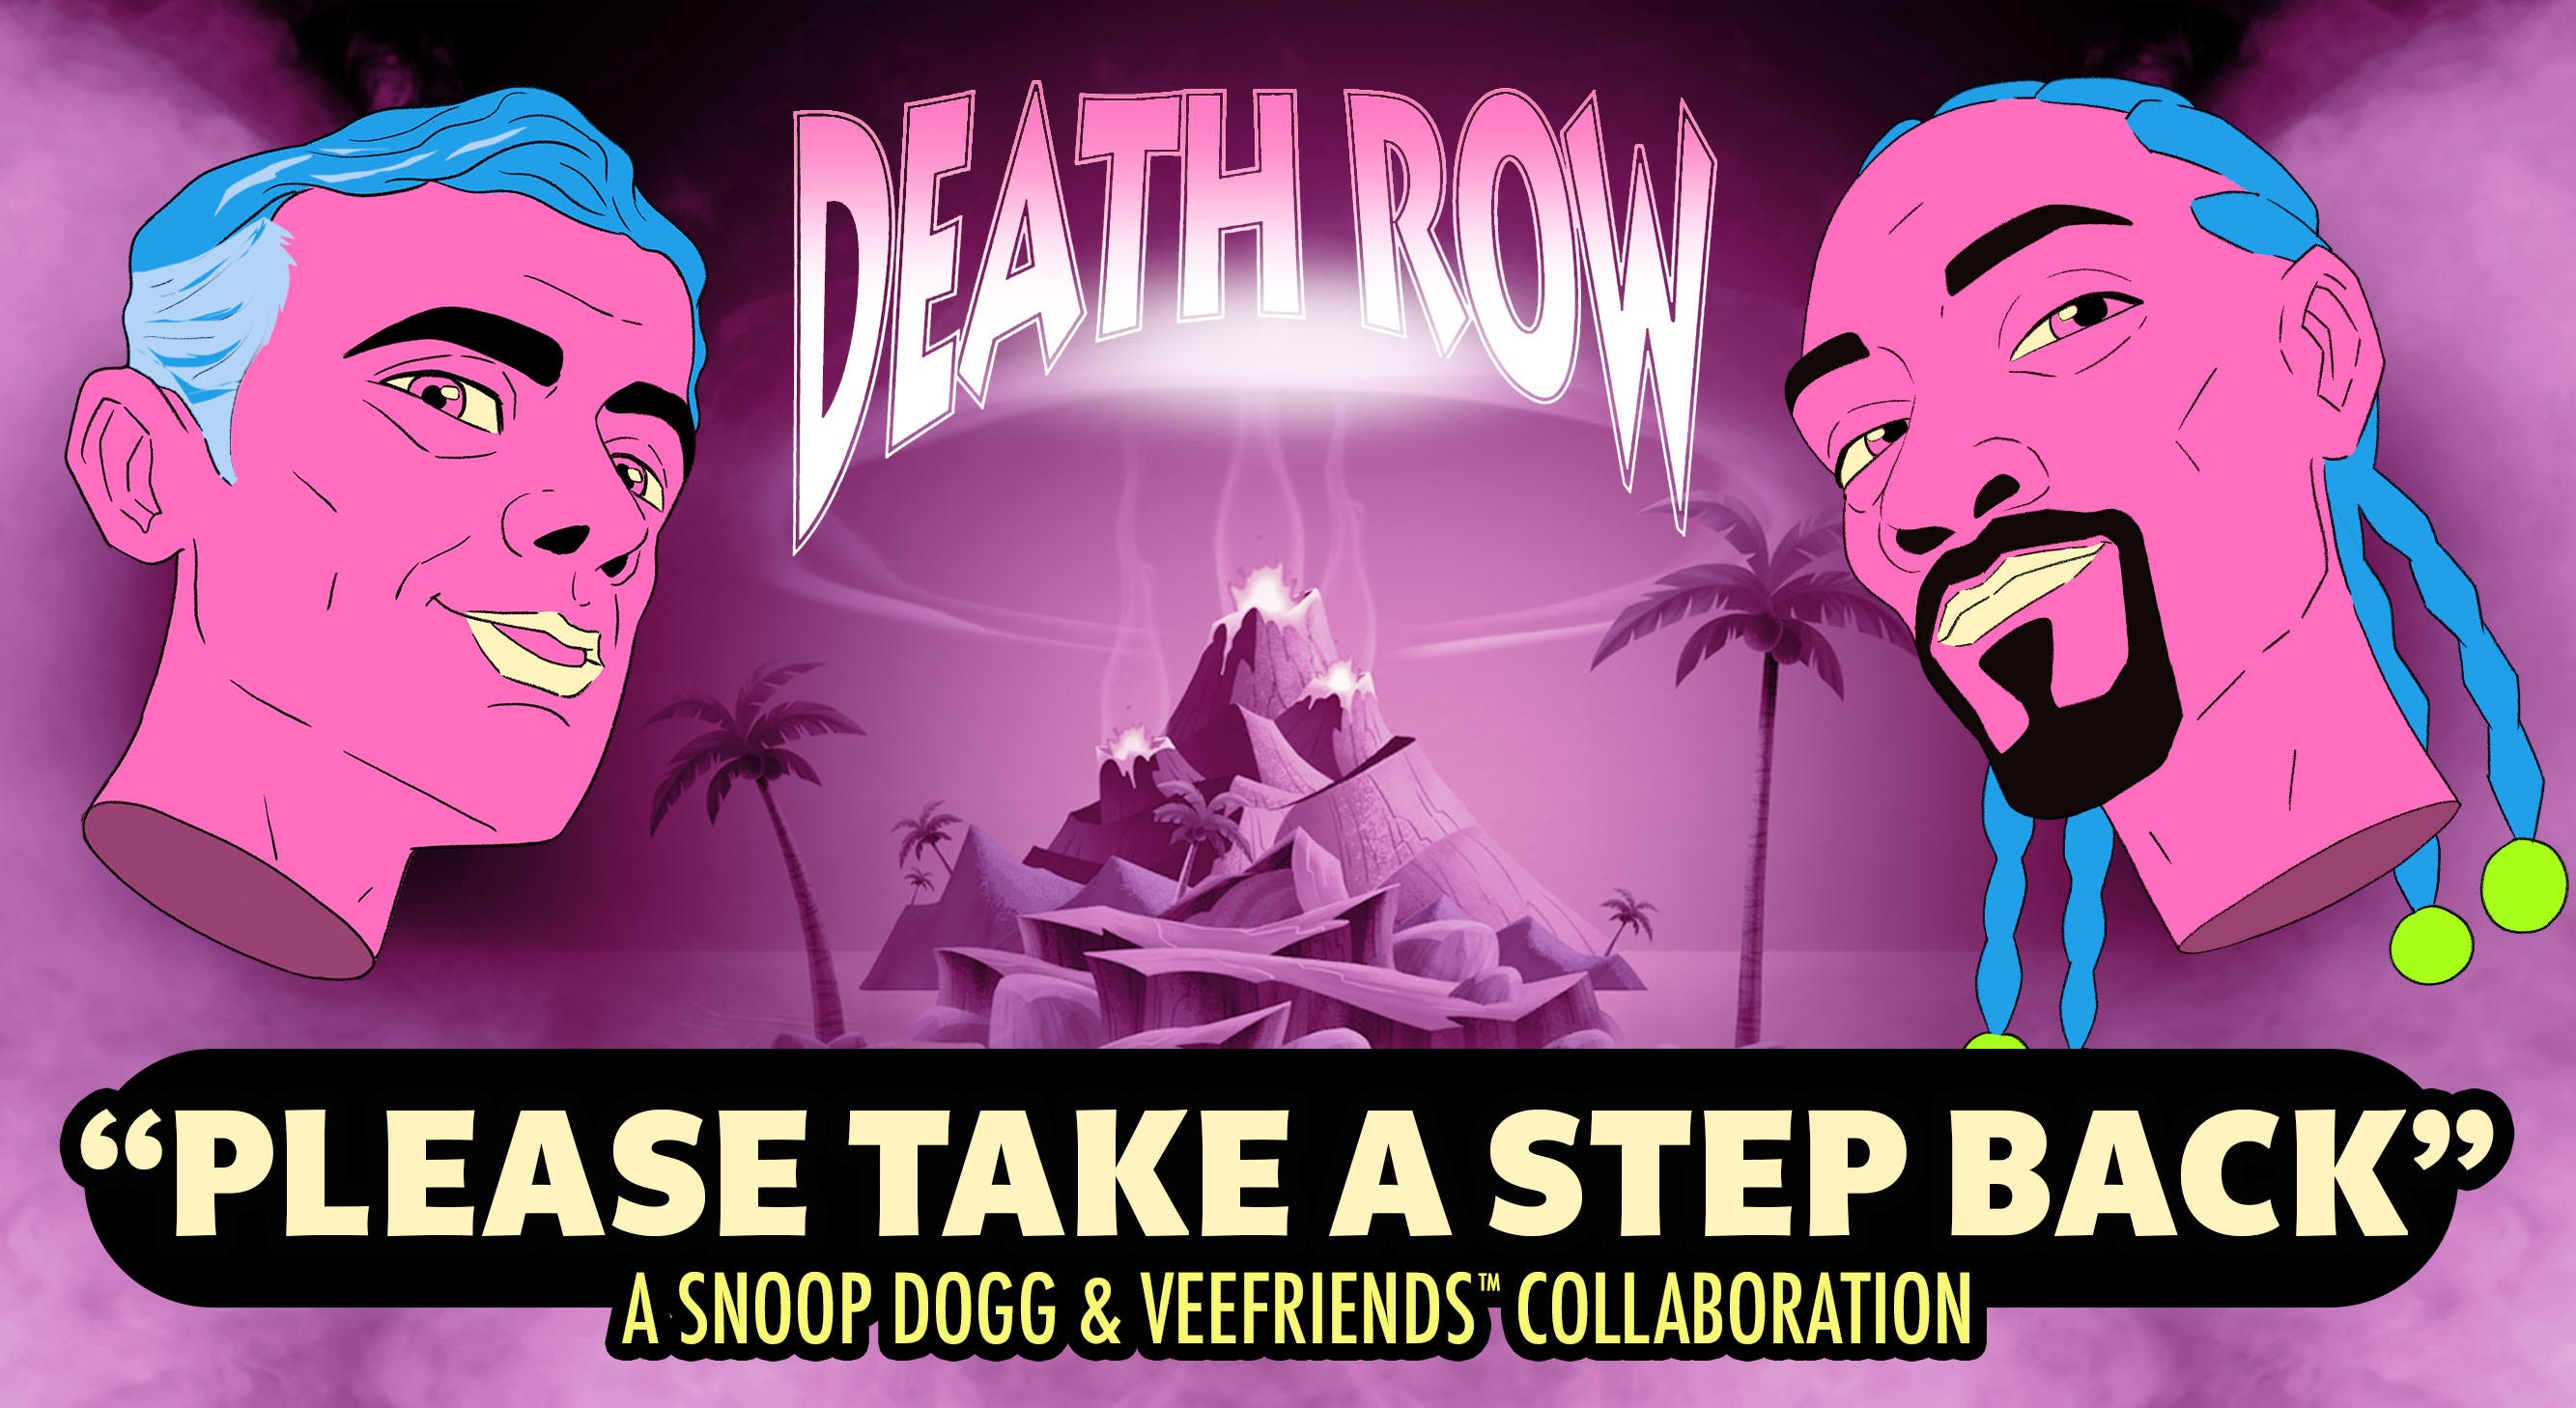 الإعلان عن أغنية "الرجاء اتخاذ خطوة للوراء" من مجموعة Snoop Dogg & VeeFriends التعاونية والأغنية